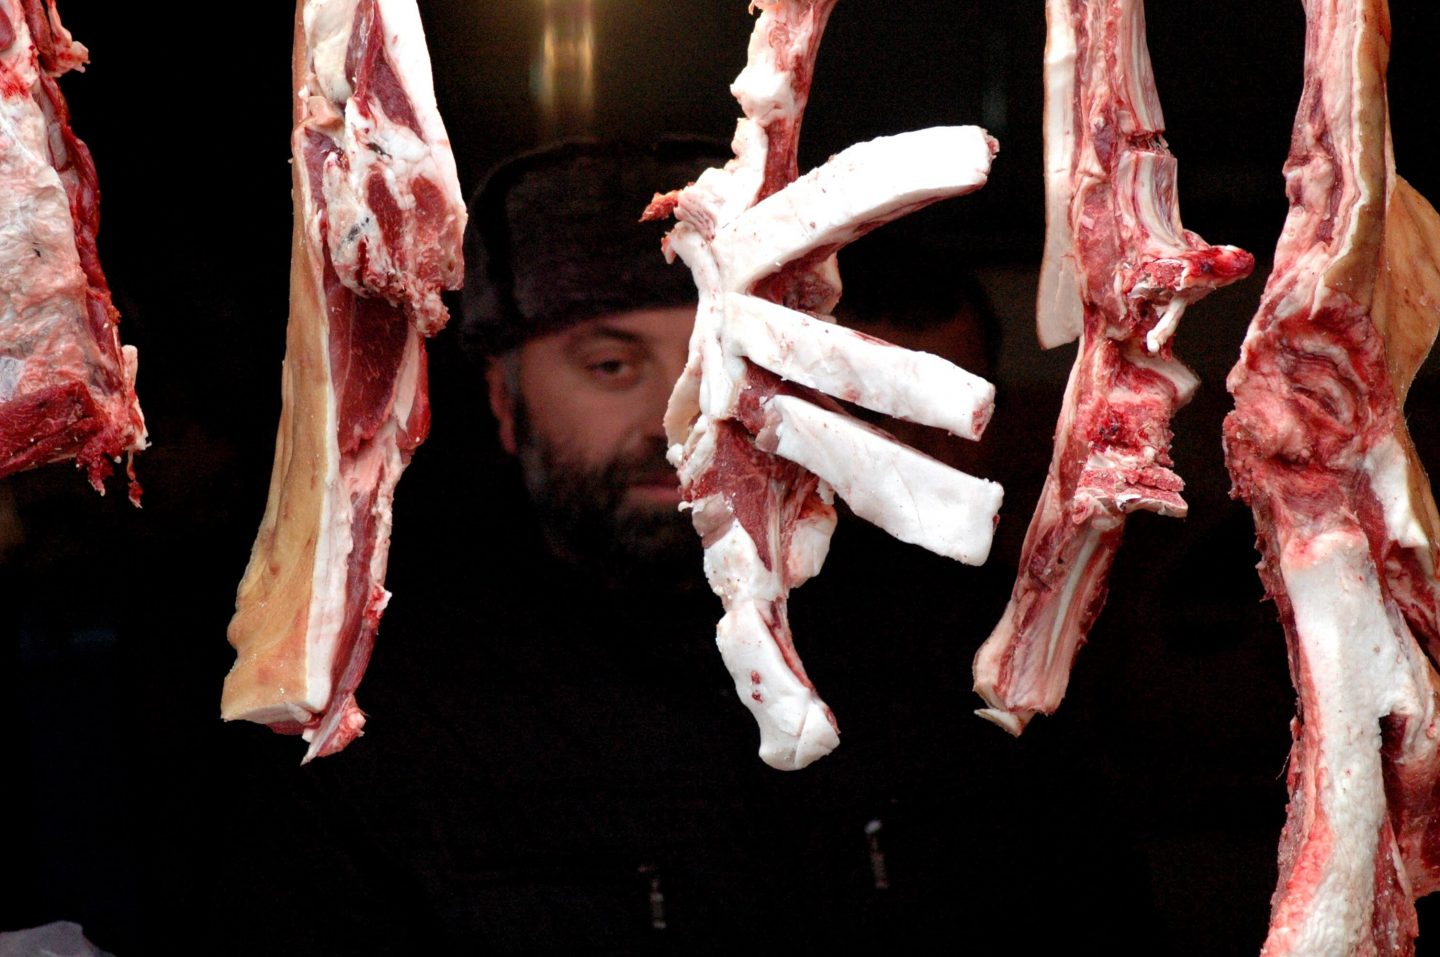 butcher shop meat